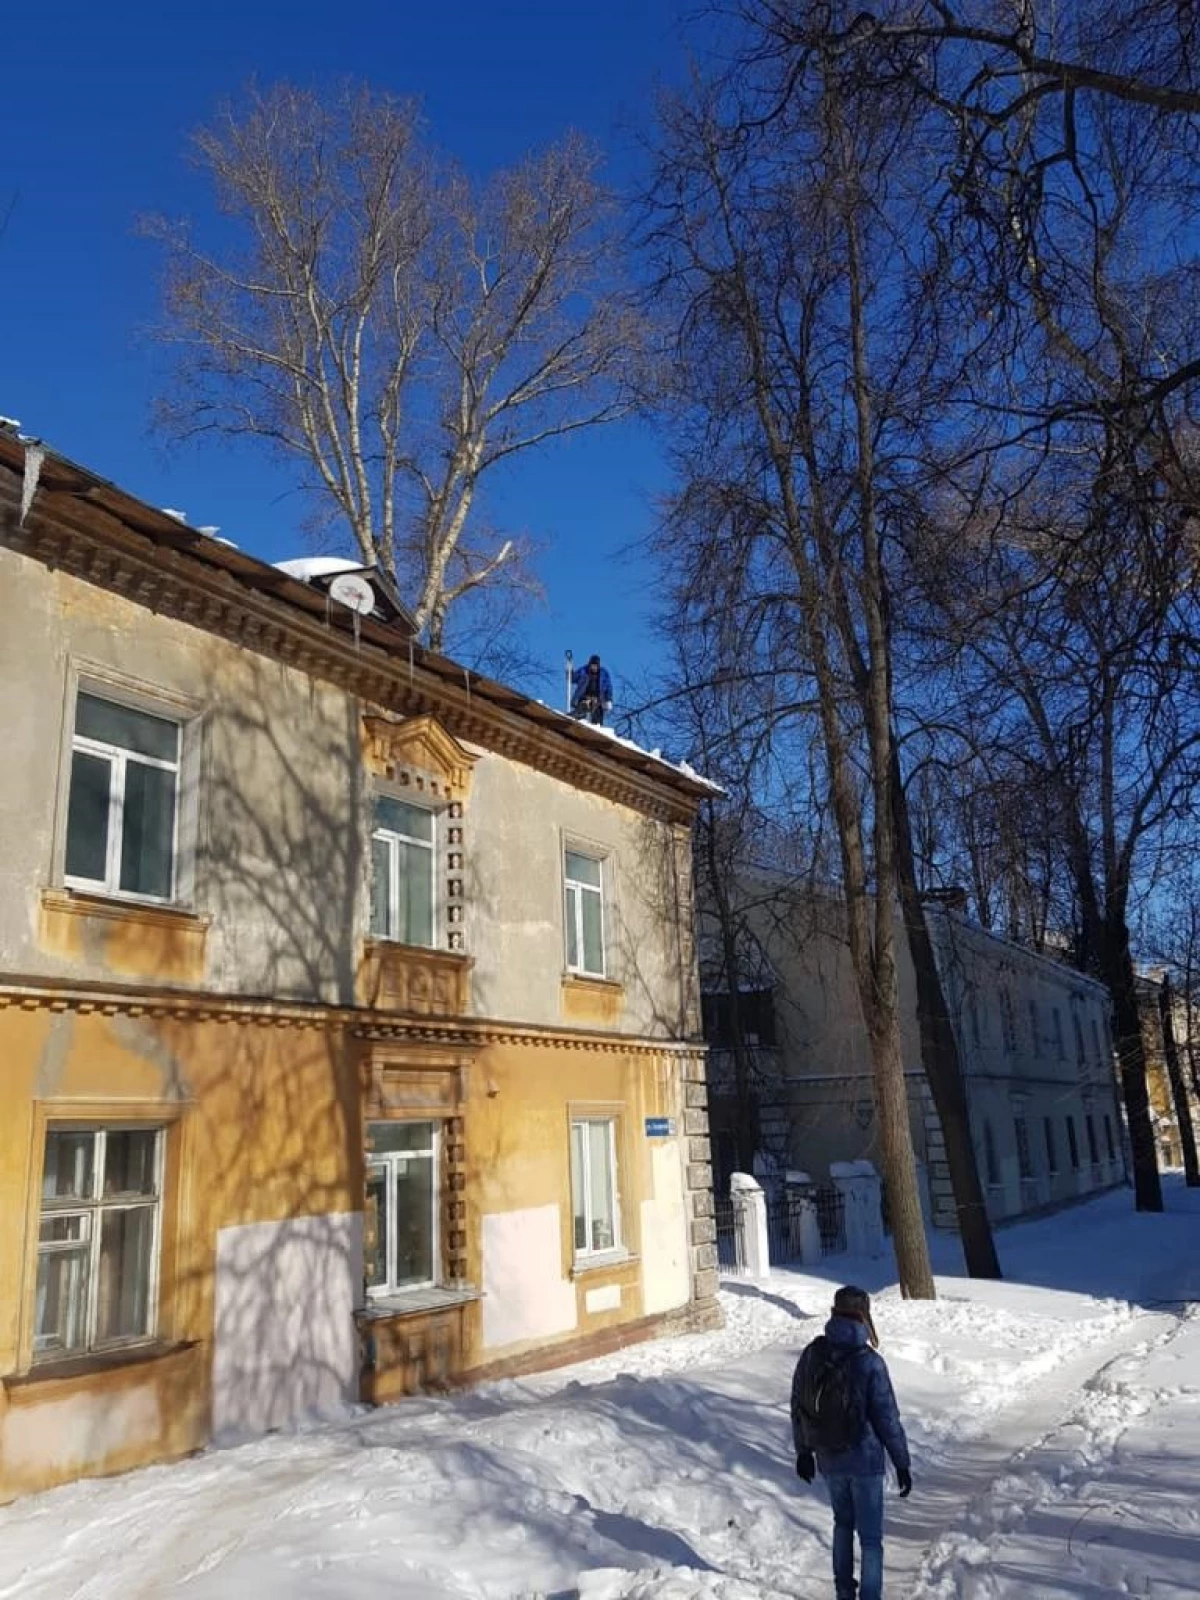 Krovovi kuća pročišćavaju s ledicama i snijegom u sovjetskom području